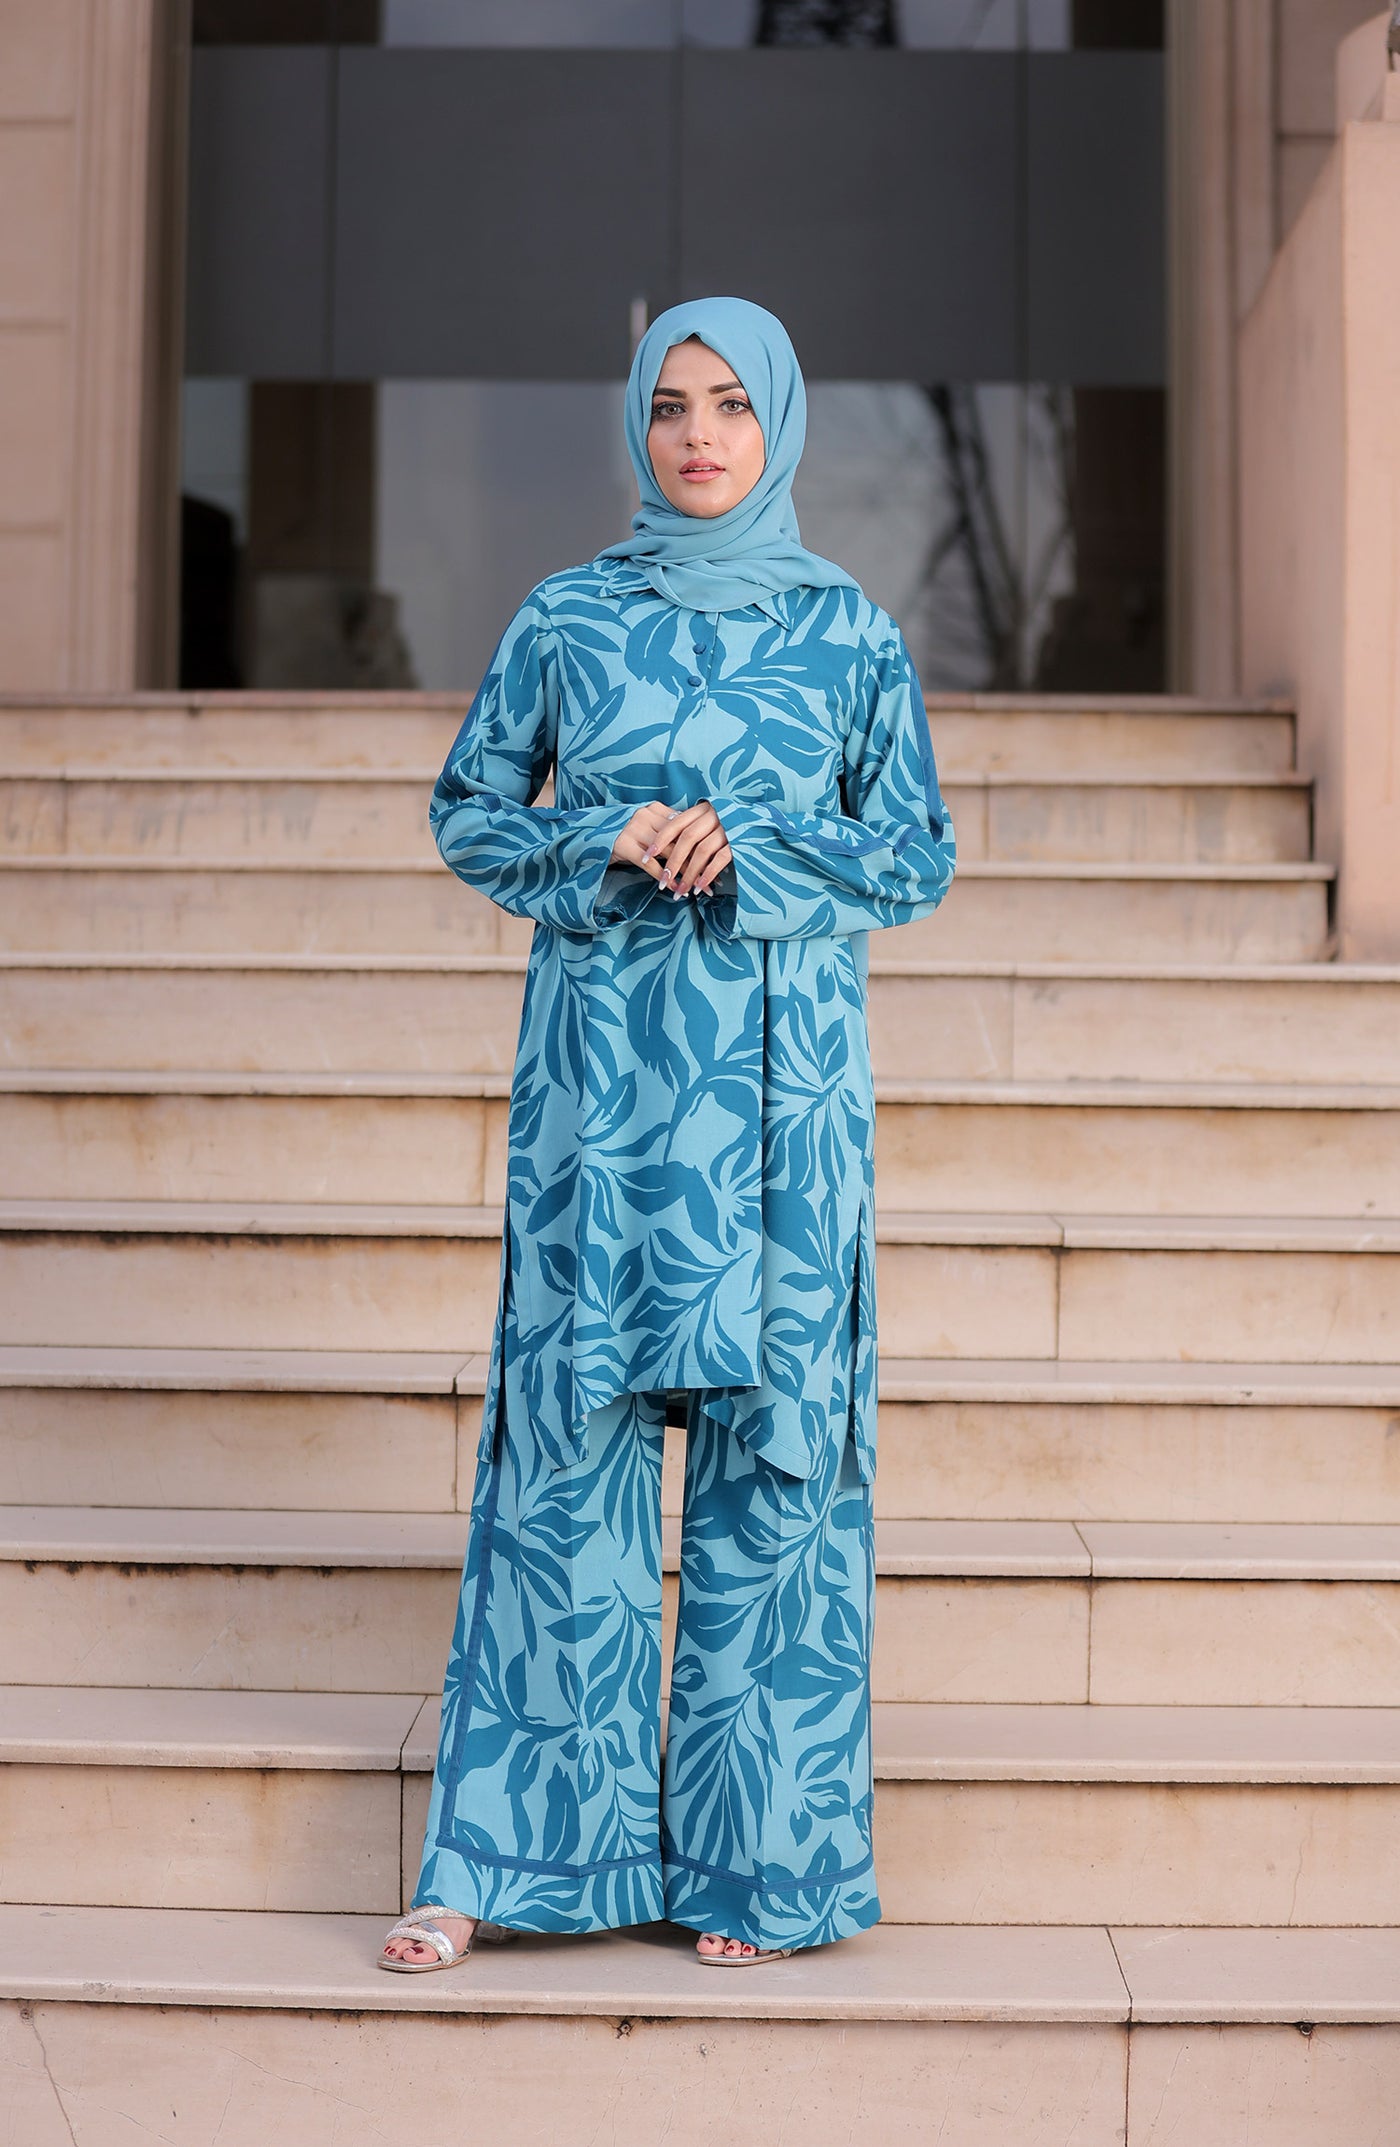 women in turquoise loungewear & hijab